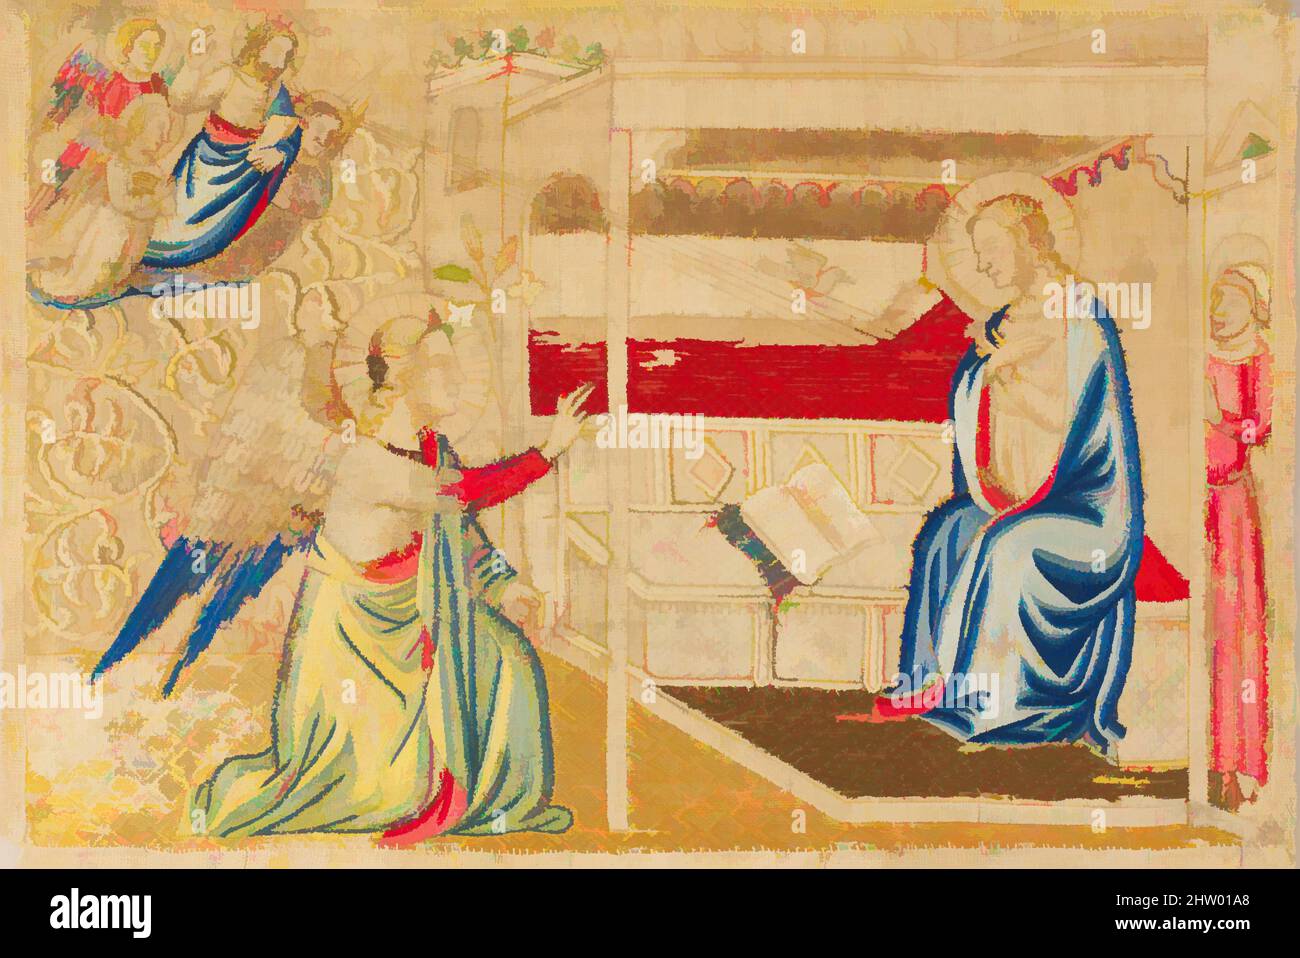 Art inspiré par l'Annonciation, ca. 1330–40, fabriqué à Florence, Italie, italien, soie, coton et fils métalliques, 11 3/8 x 16 1/2 po (28,9 x 41,9 cm), textiles brodés, pour créer ces panneaux, un artiste florentin a d'abord dessiné les figures sur les toiles de coton et ensuite les a donné, oeuvres classiques modernisées par Artotop avec un peu de modernité. Formes, couleur et valeur, impact visuel accrocheur sur l'art émotions par la liberté d'œuvres d'art d'une manière contemporaine. Un message intemporel qui cherche une nouvelle direction créative. Artistes qui se tournent vers le support numérique et créent le NFT Artotop Banque D'Images